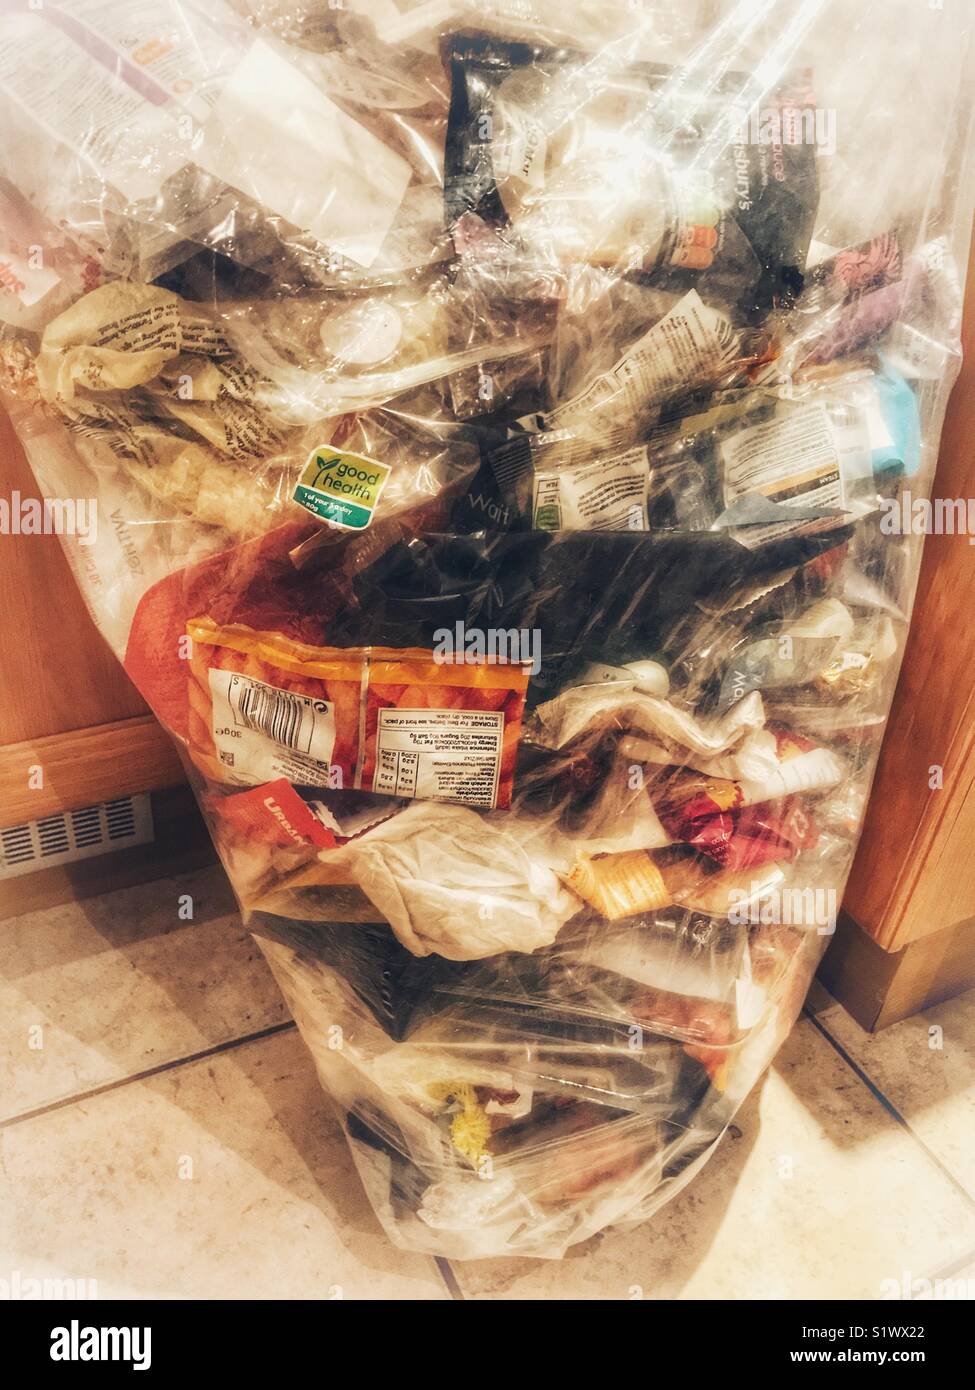 Questioni ambientali. Non riciclabile rifiuti domestici, compresa la plastica imballaggi alimentari da frutta e ortaggi acquistati nei supermercati. Foto Stock